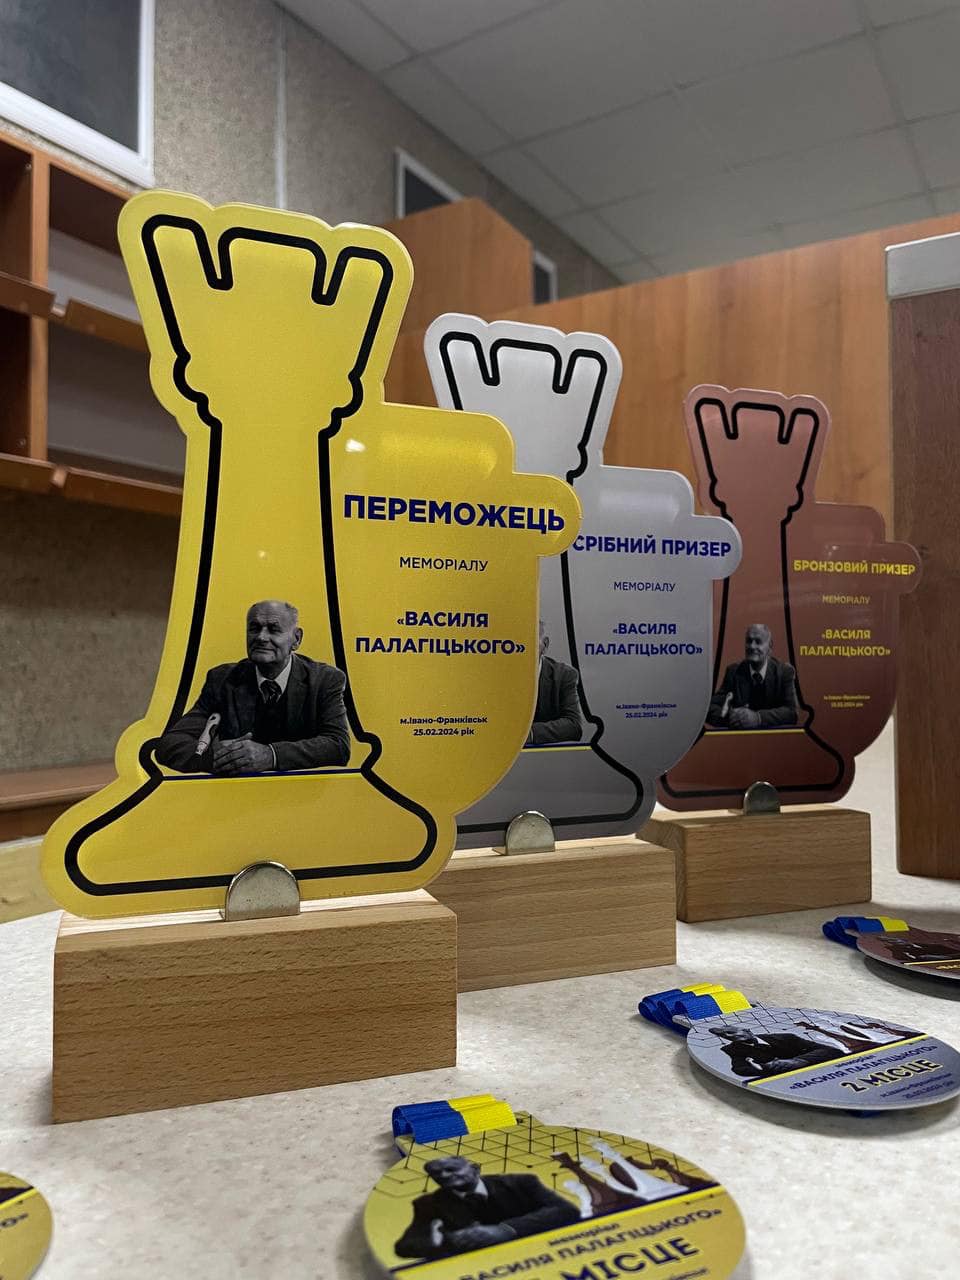 112 учасників зі всієї України зібралося у Франківську на шаховому турнірі пам’яті Василя Палагіцького (ФОТО)